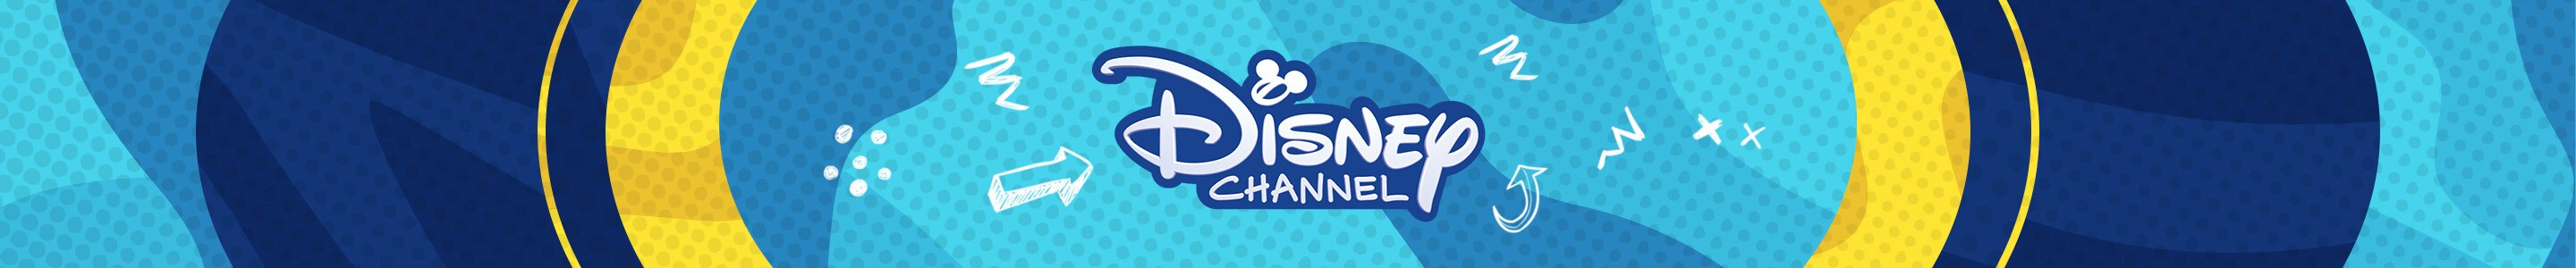 Disney Channel Logo auf blauem Hintergrund